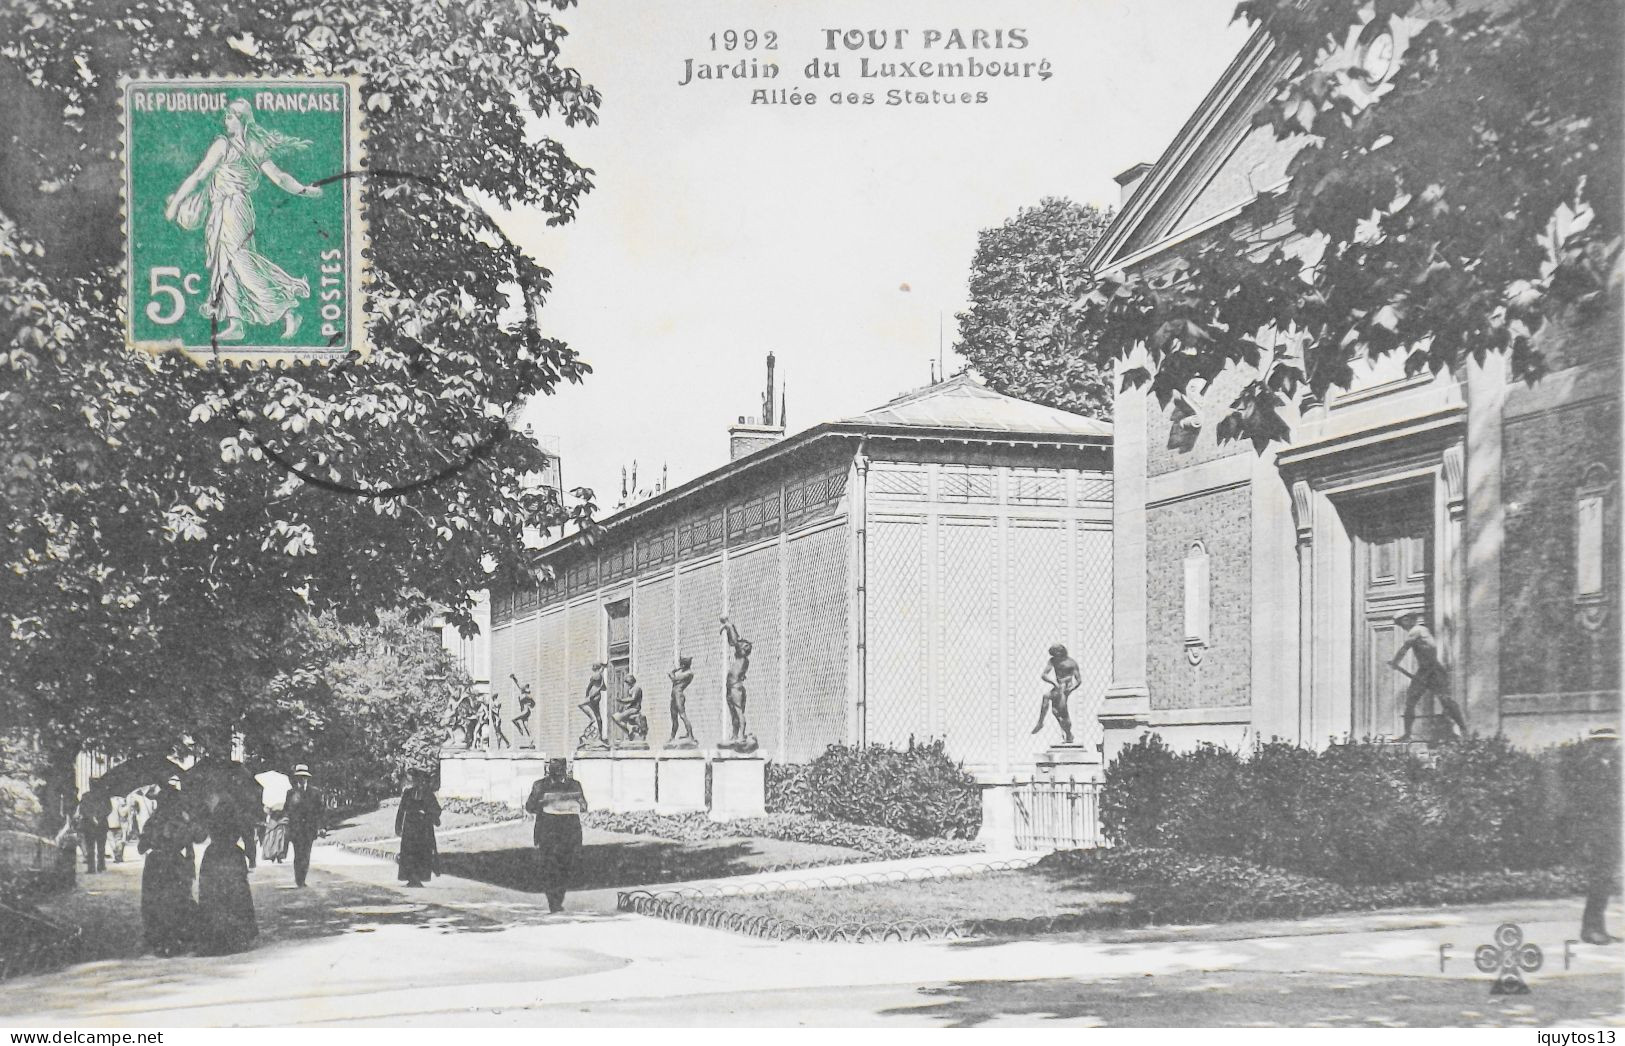 CPA. [75] > TOUT PARIS > N° 1992 - Jardin Du Luxembourg, Allée Des Statues - (VIe Arrt.) - 1911 - Coll. F. Fleury - TBE - Arrondissement: 06